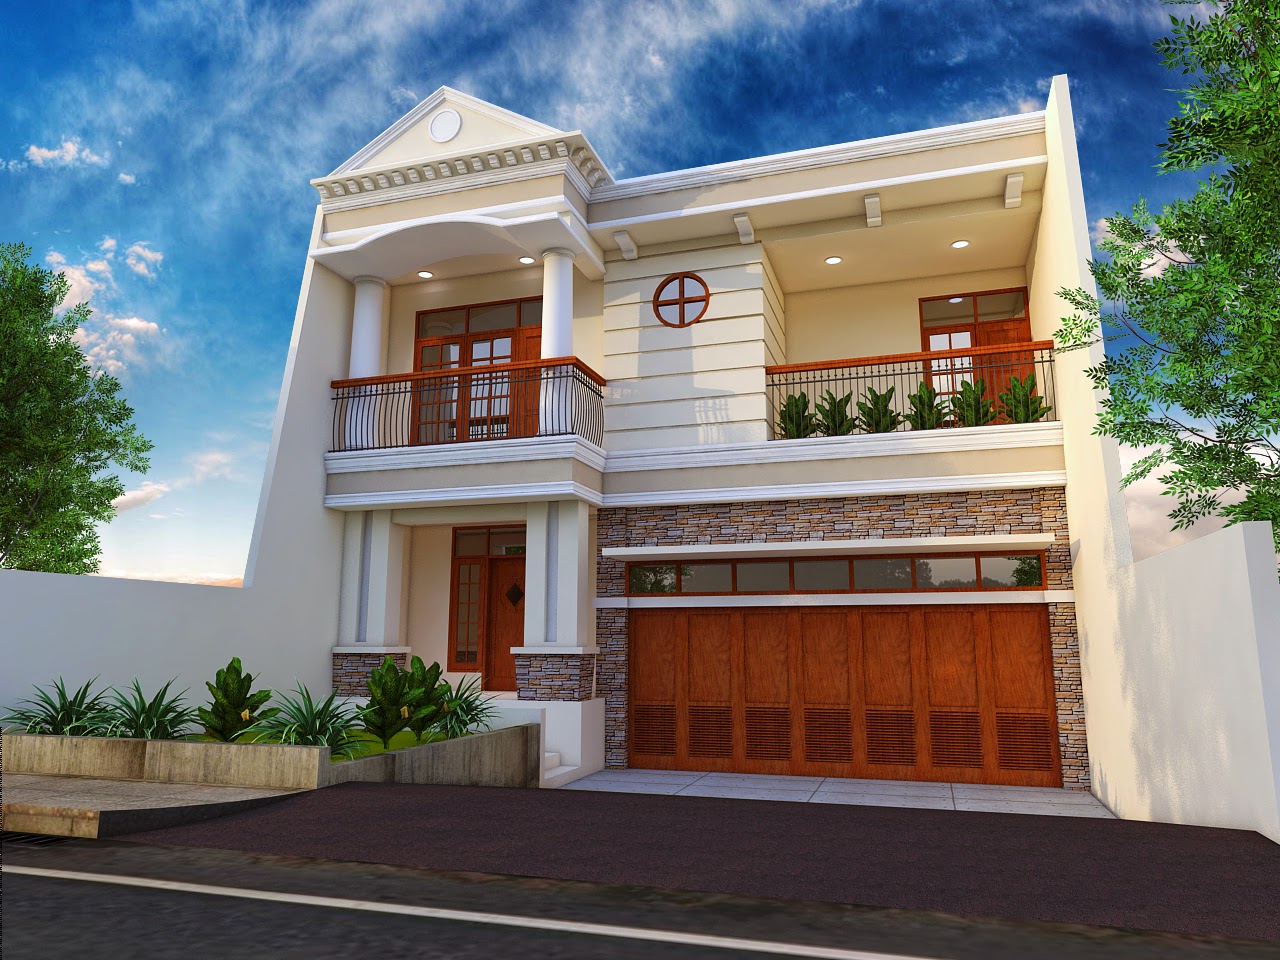 KUMPULAN GAMBAR  RUMAH  KLASIK  MINIMALIS  Desain Rumah  Klasik  Modern  Foto Desain Rumah  Terbaru